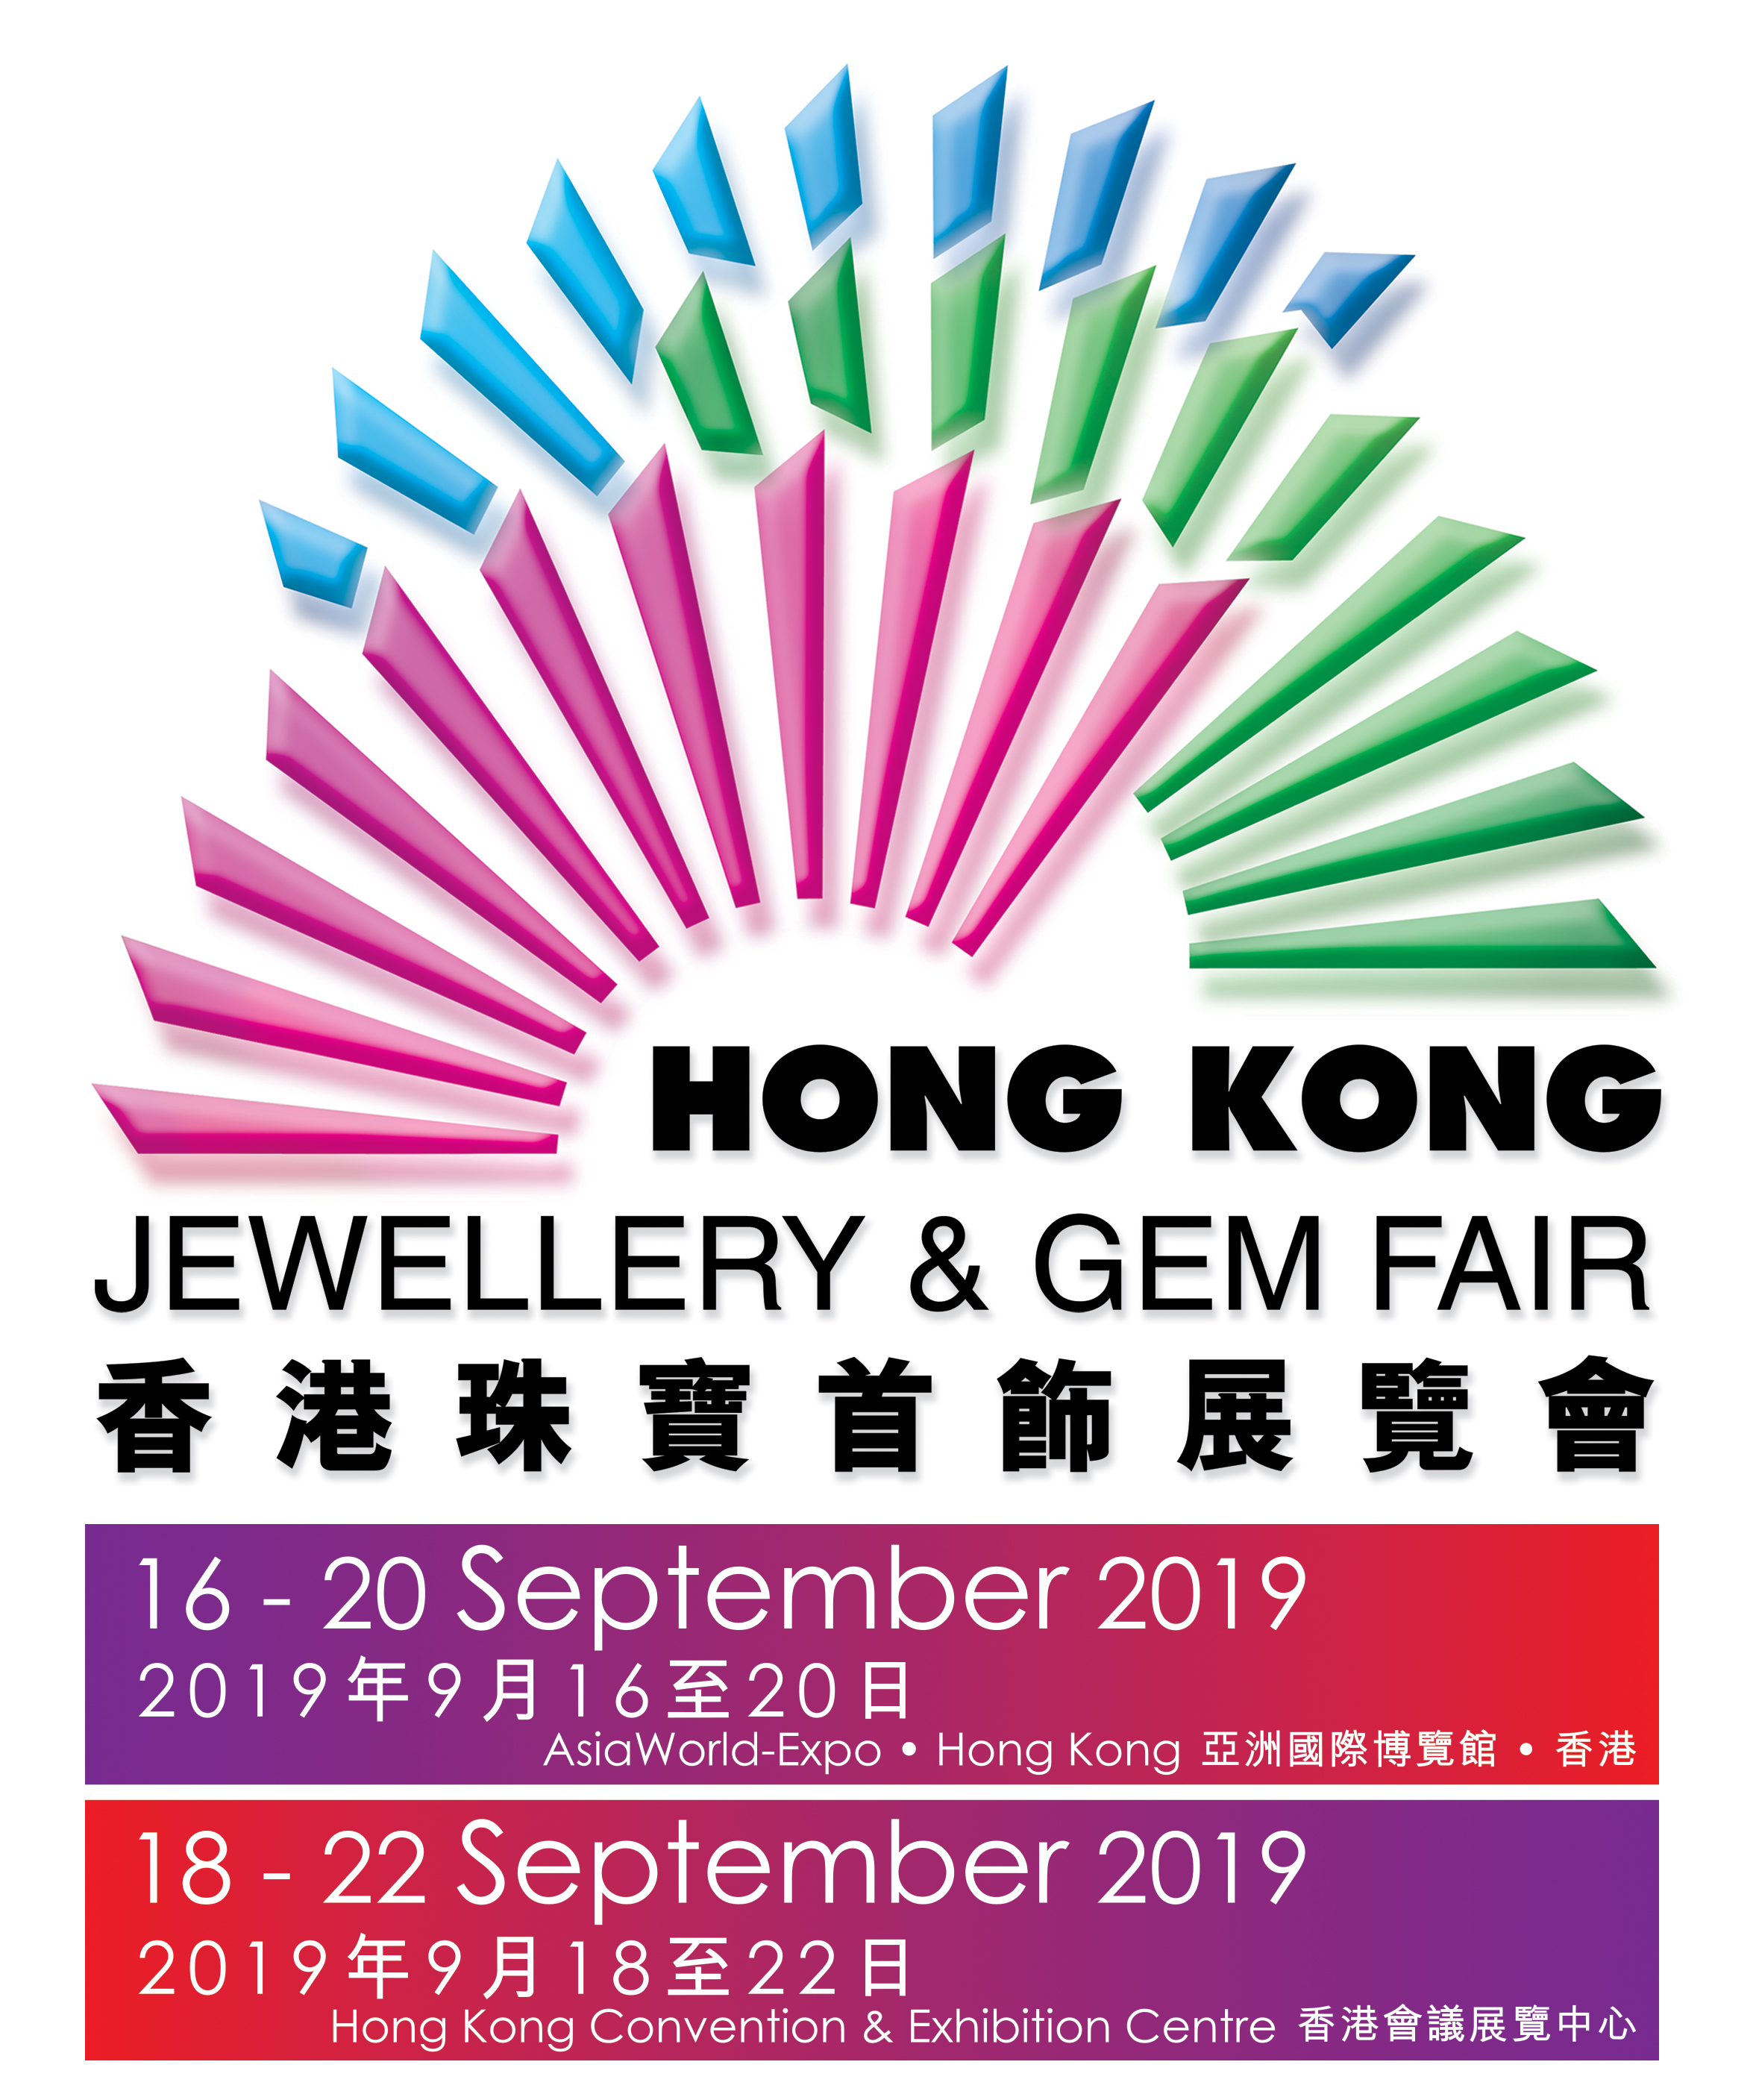 September Hong Kong Jewellery & Gem Fair 2019 Special Events